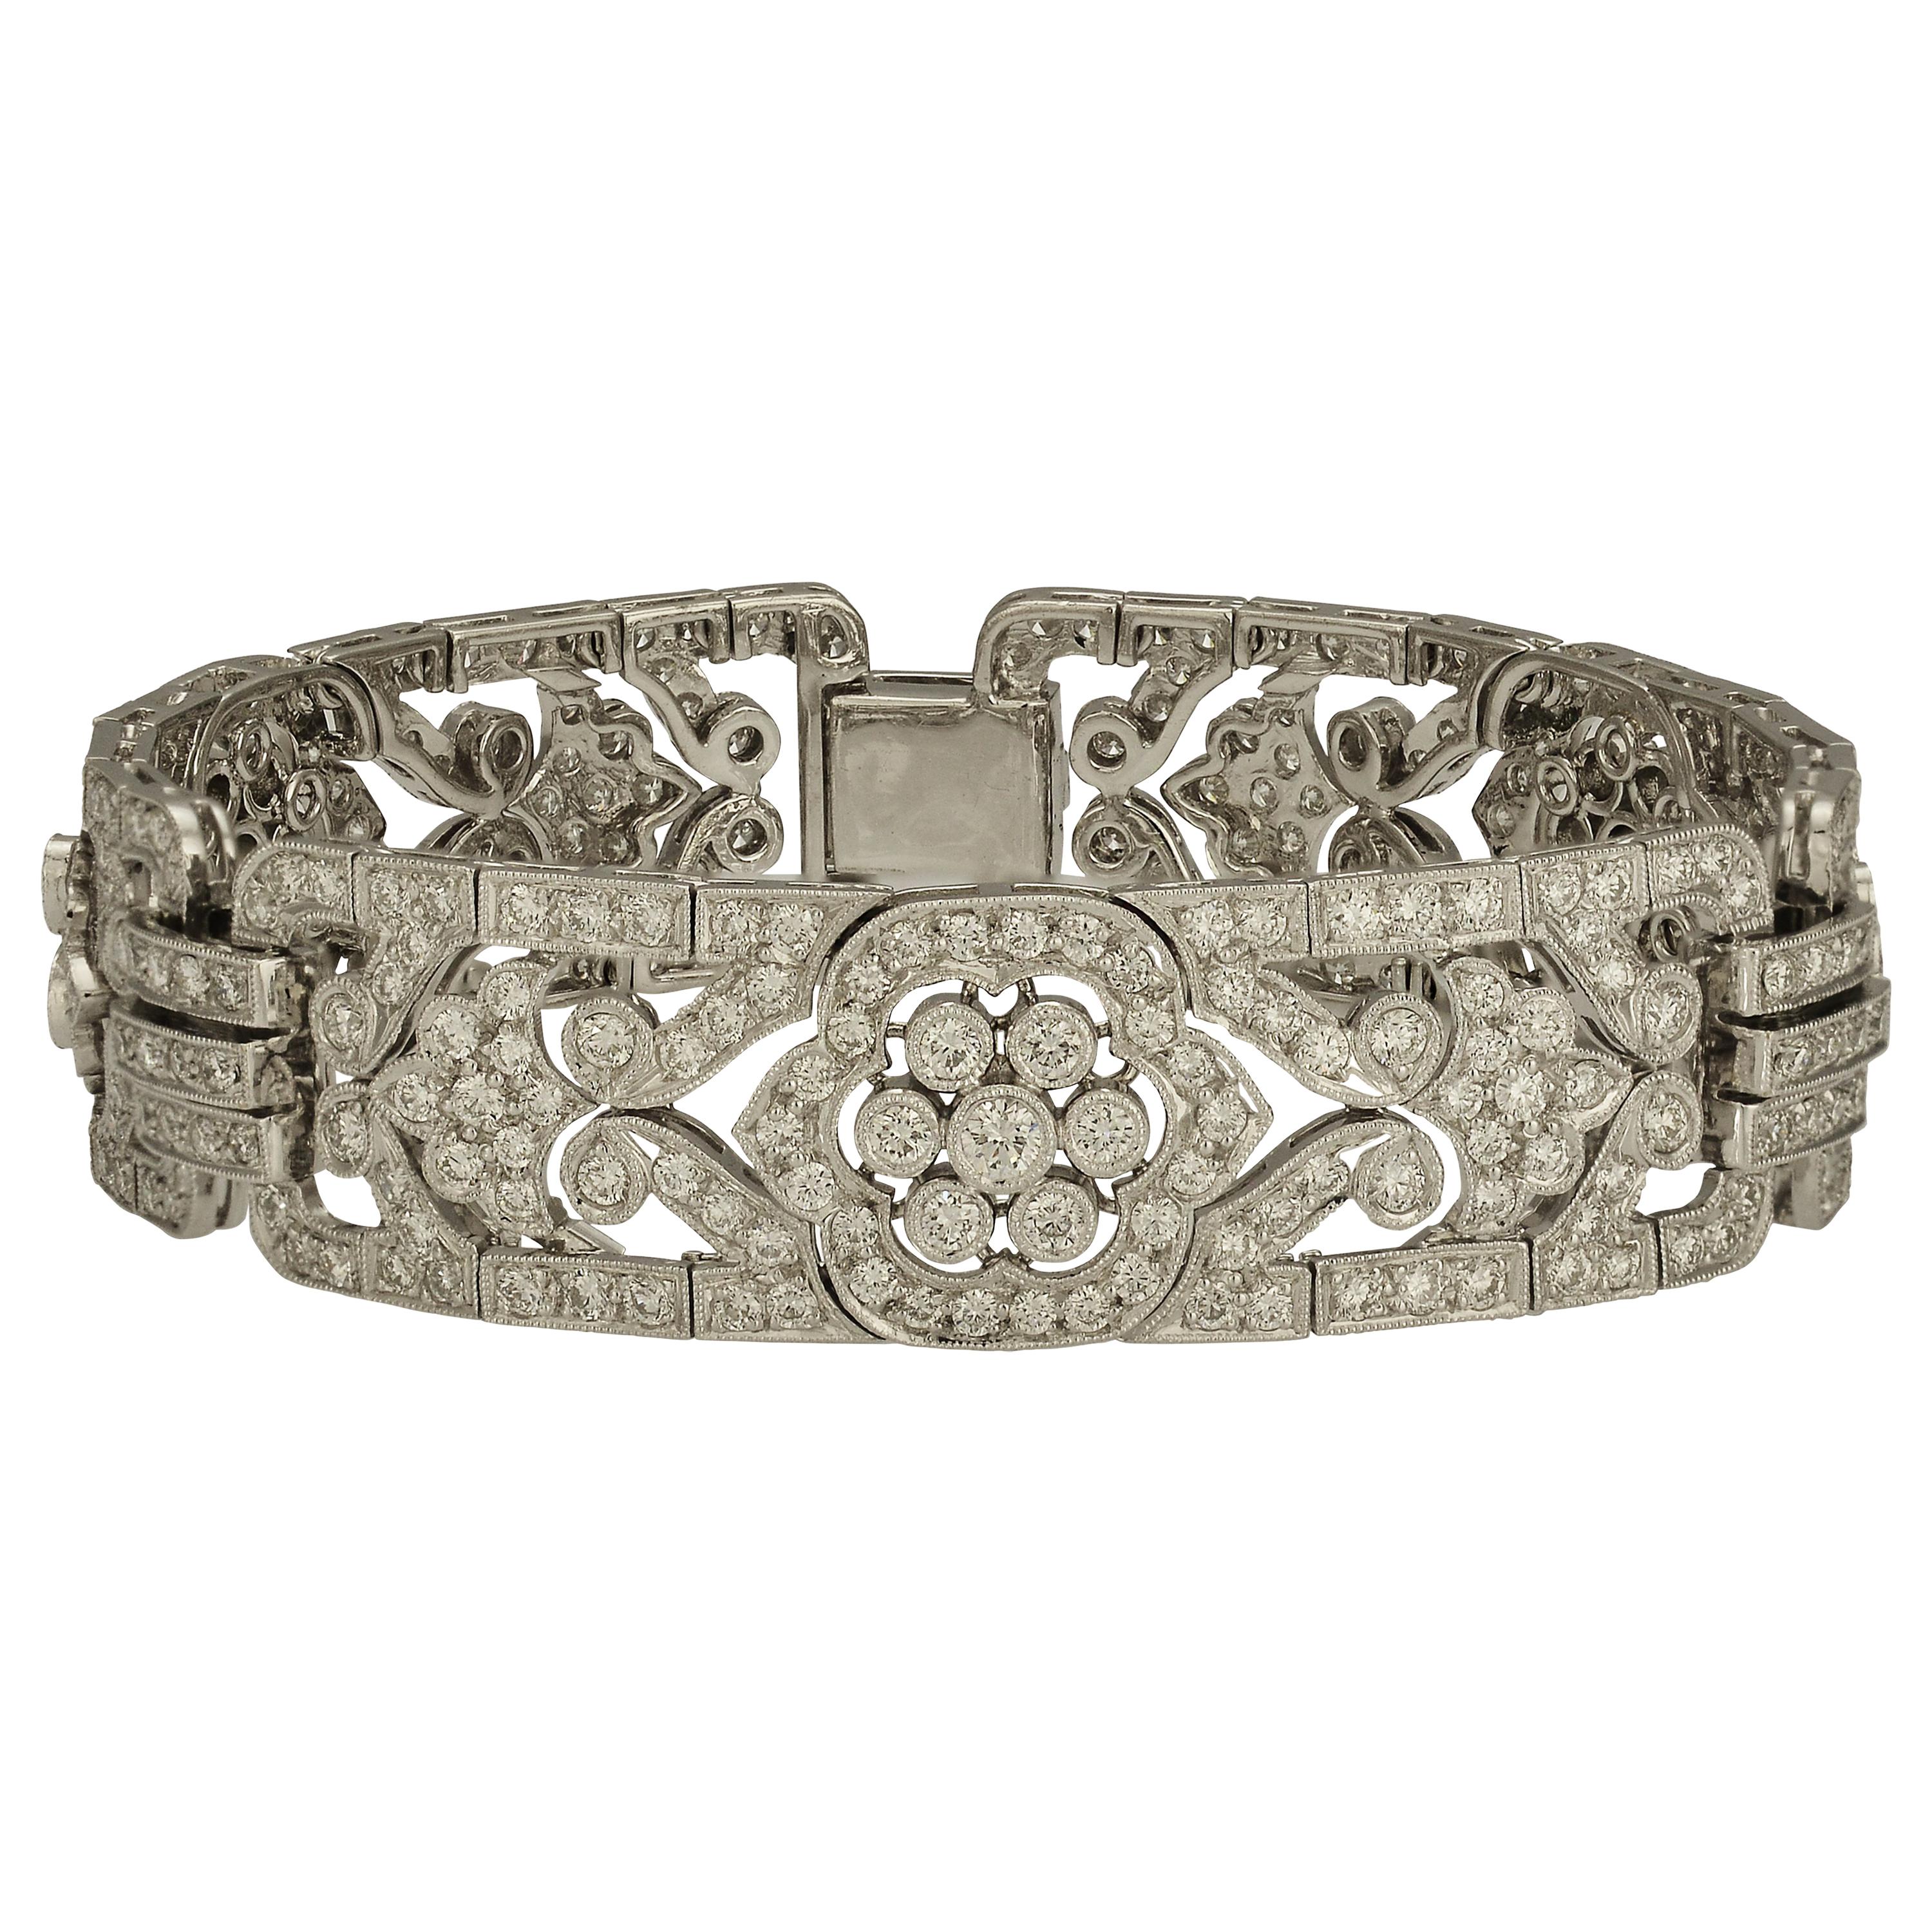 6.86 Carat Diamond Bracelet with Floral Accents